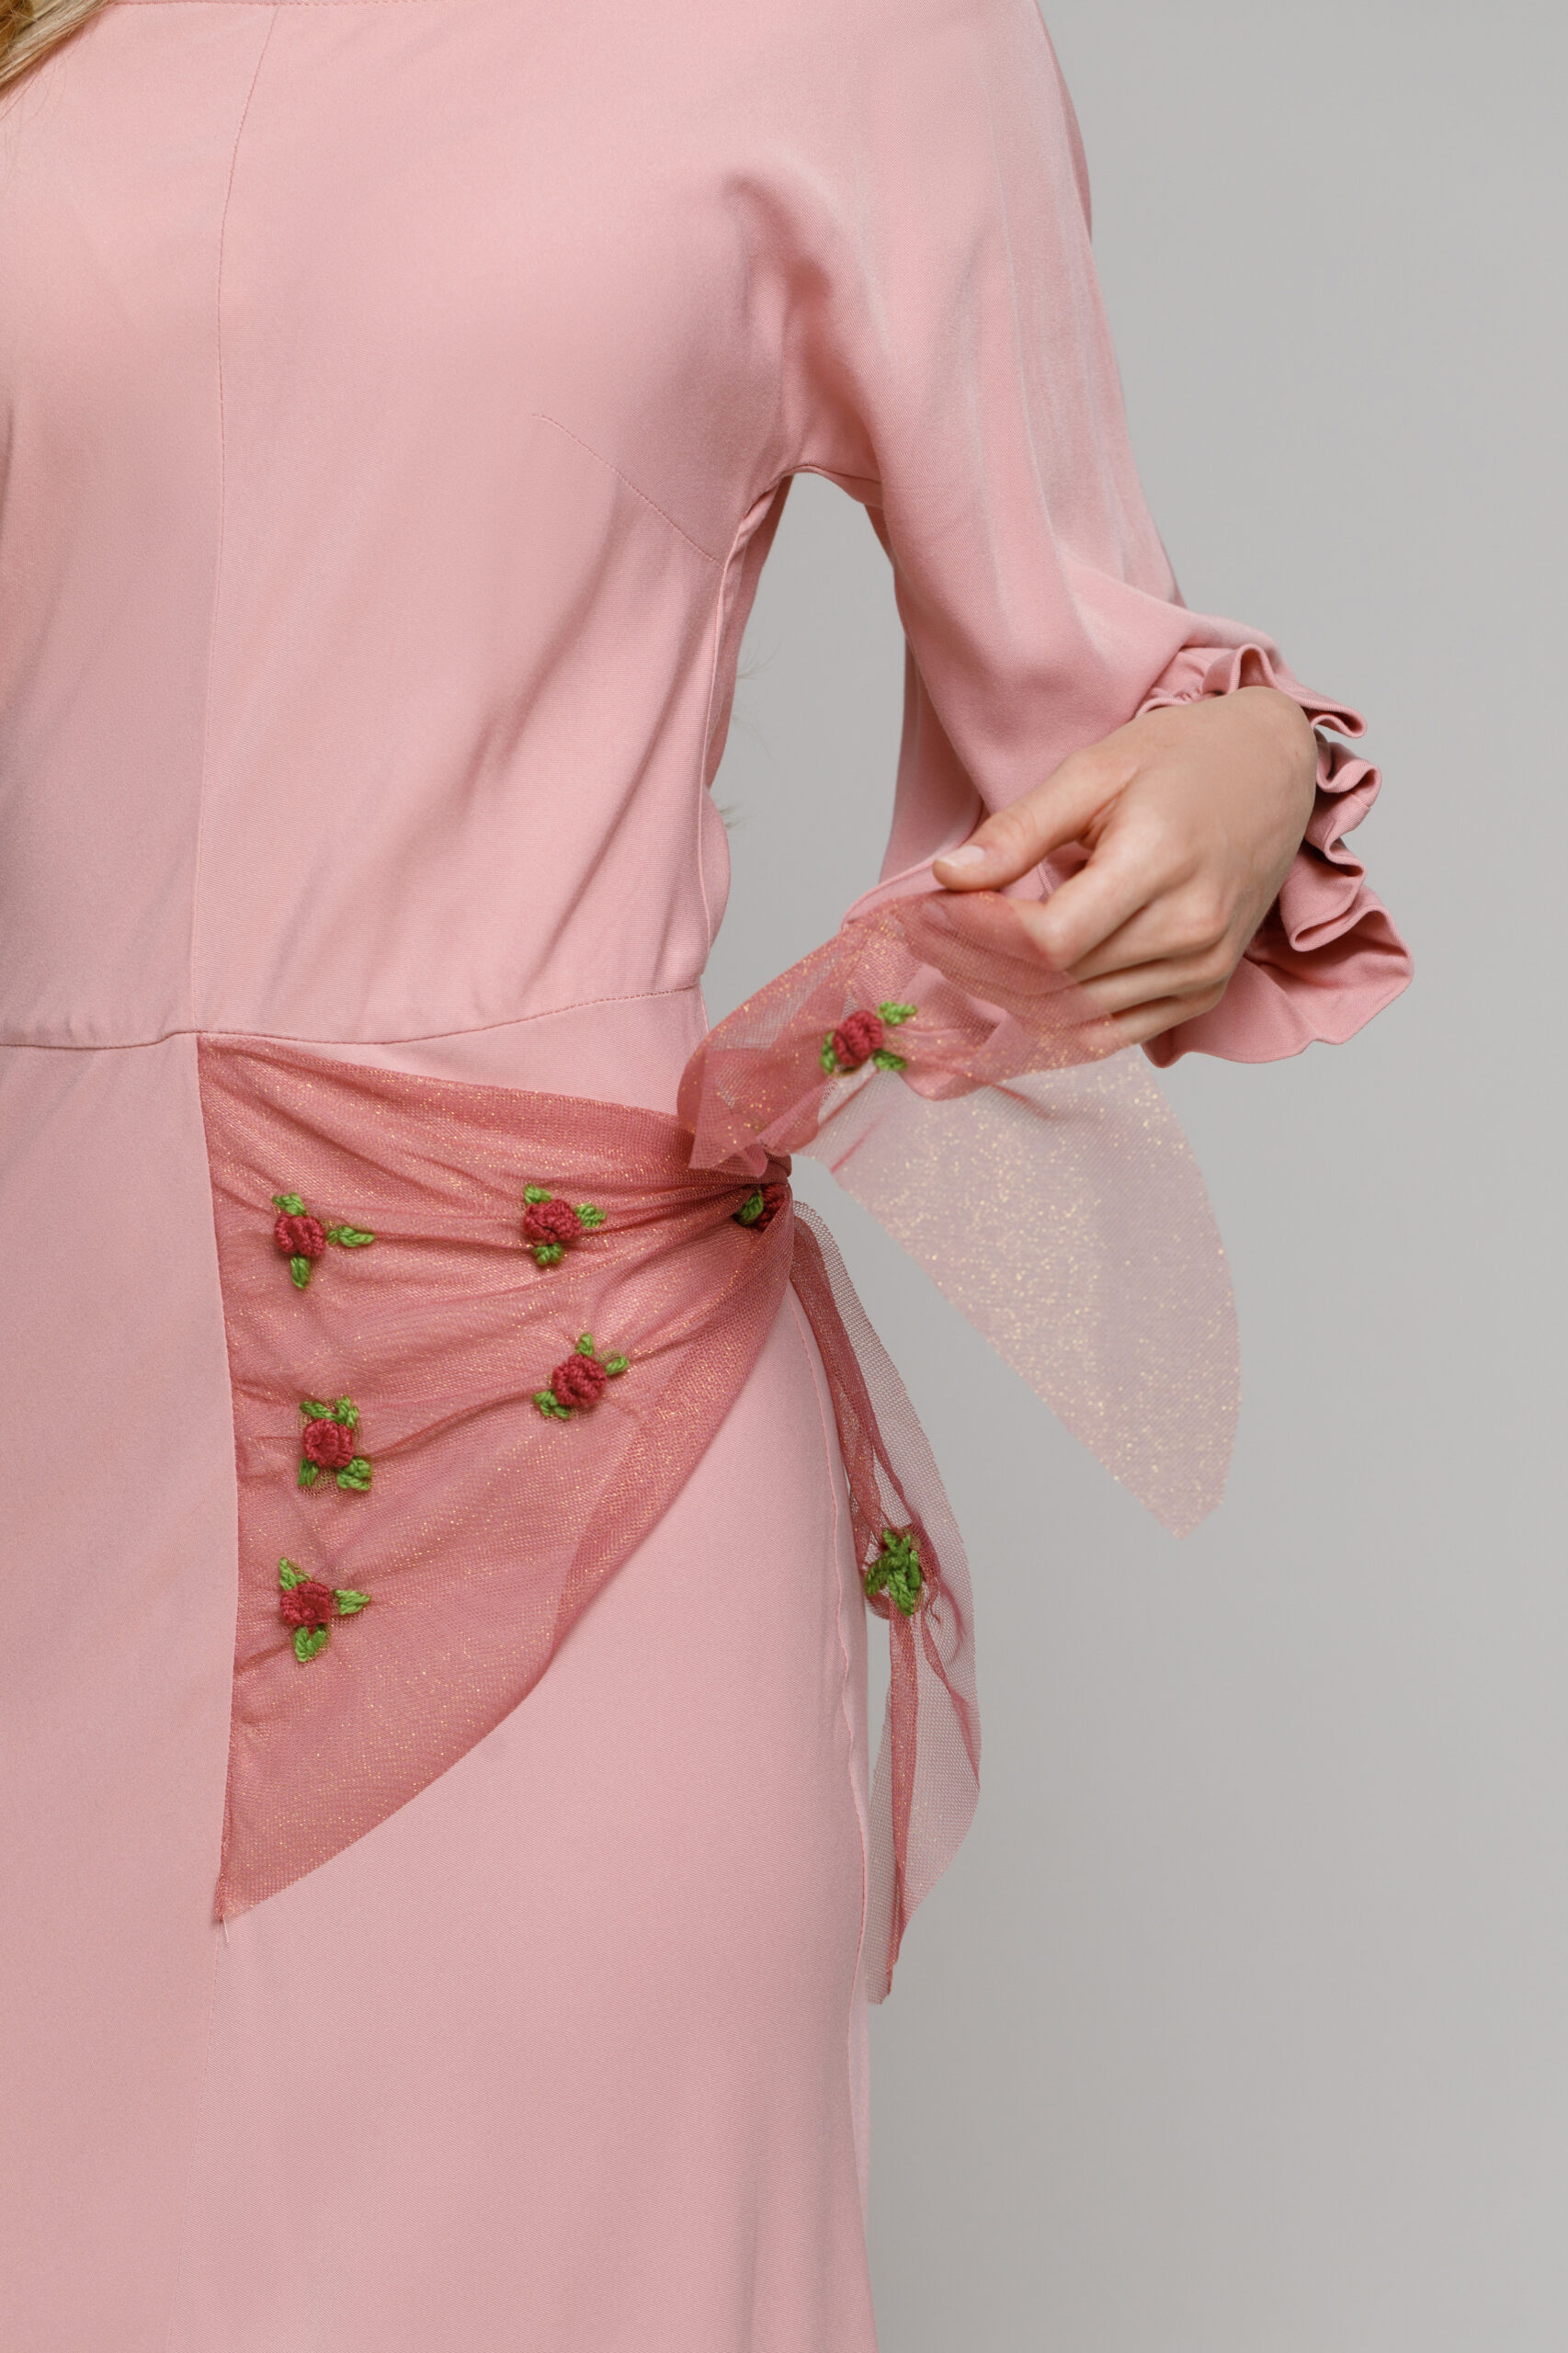 Rochie HARRIS roz pudrat cu esarfa brodata. Materiale naturale, design unicat, cu broderie si aplicatii handmade